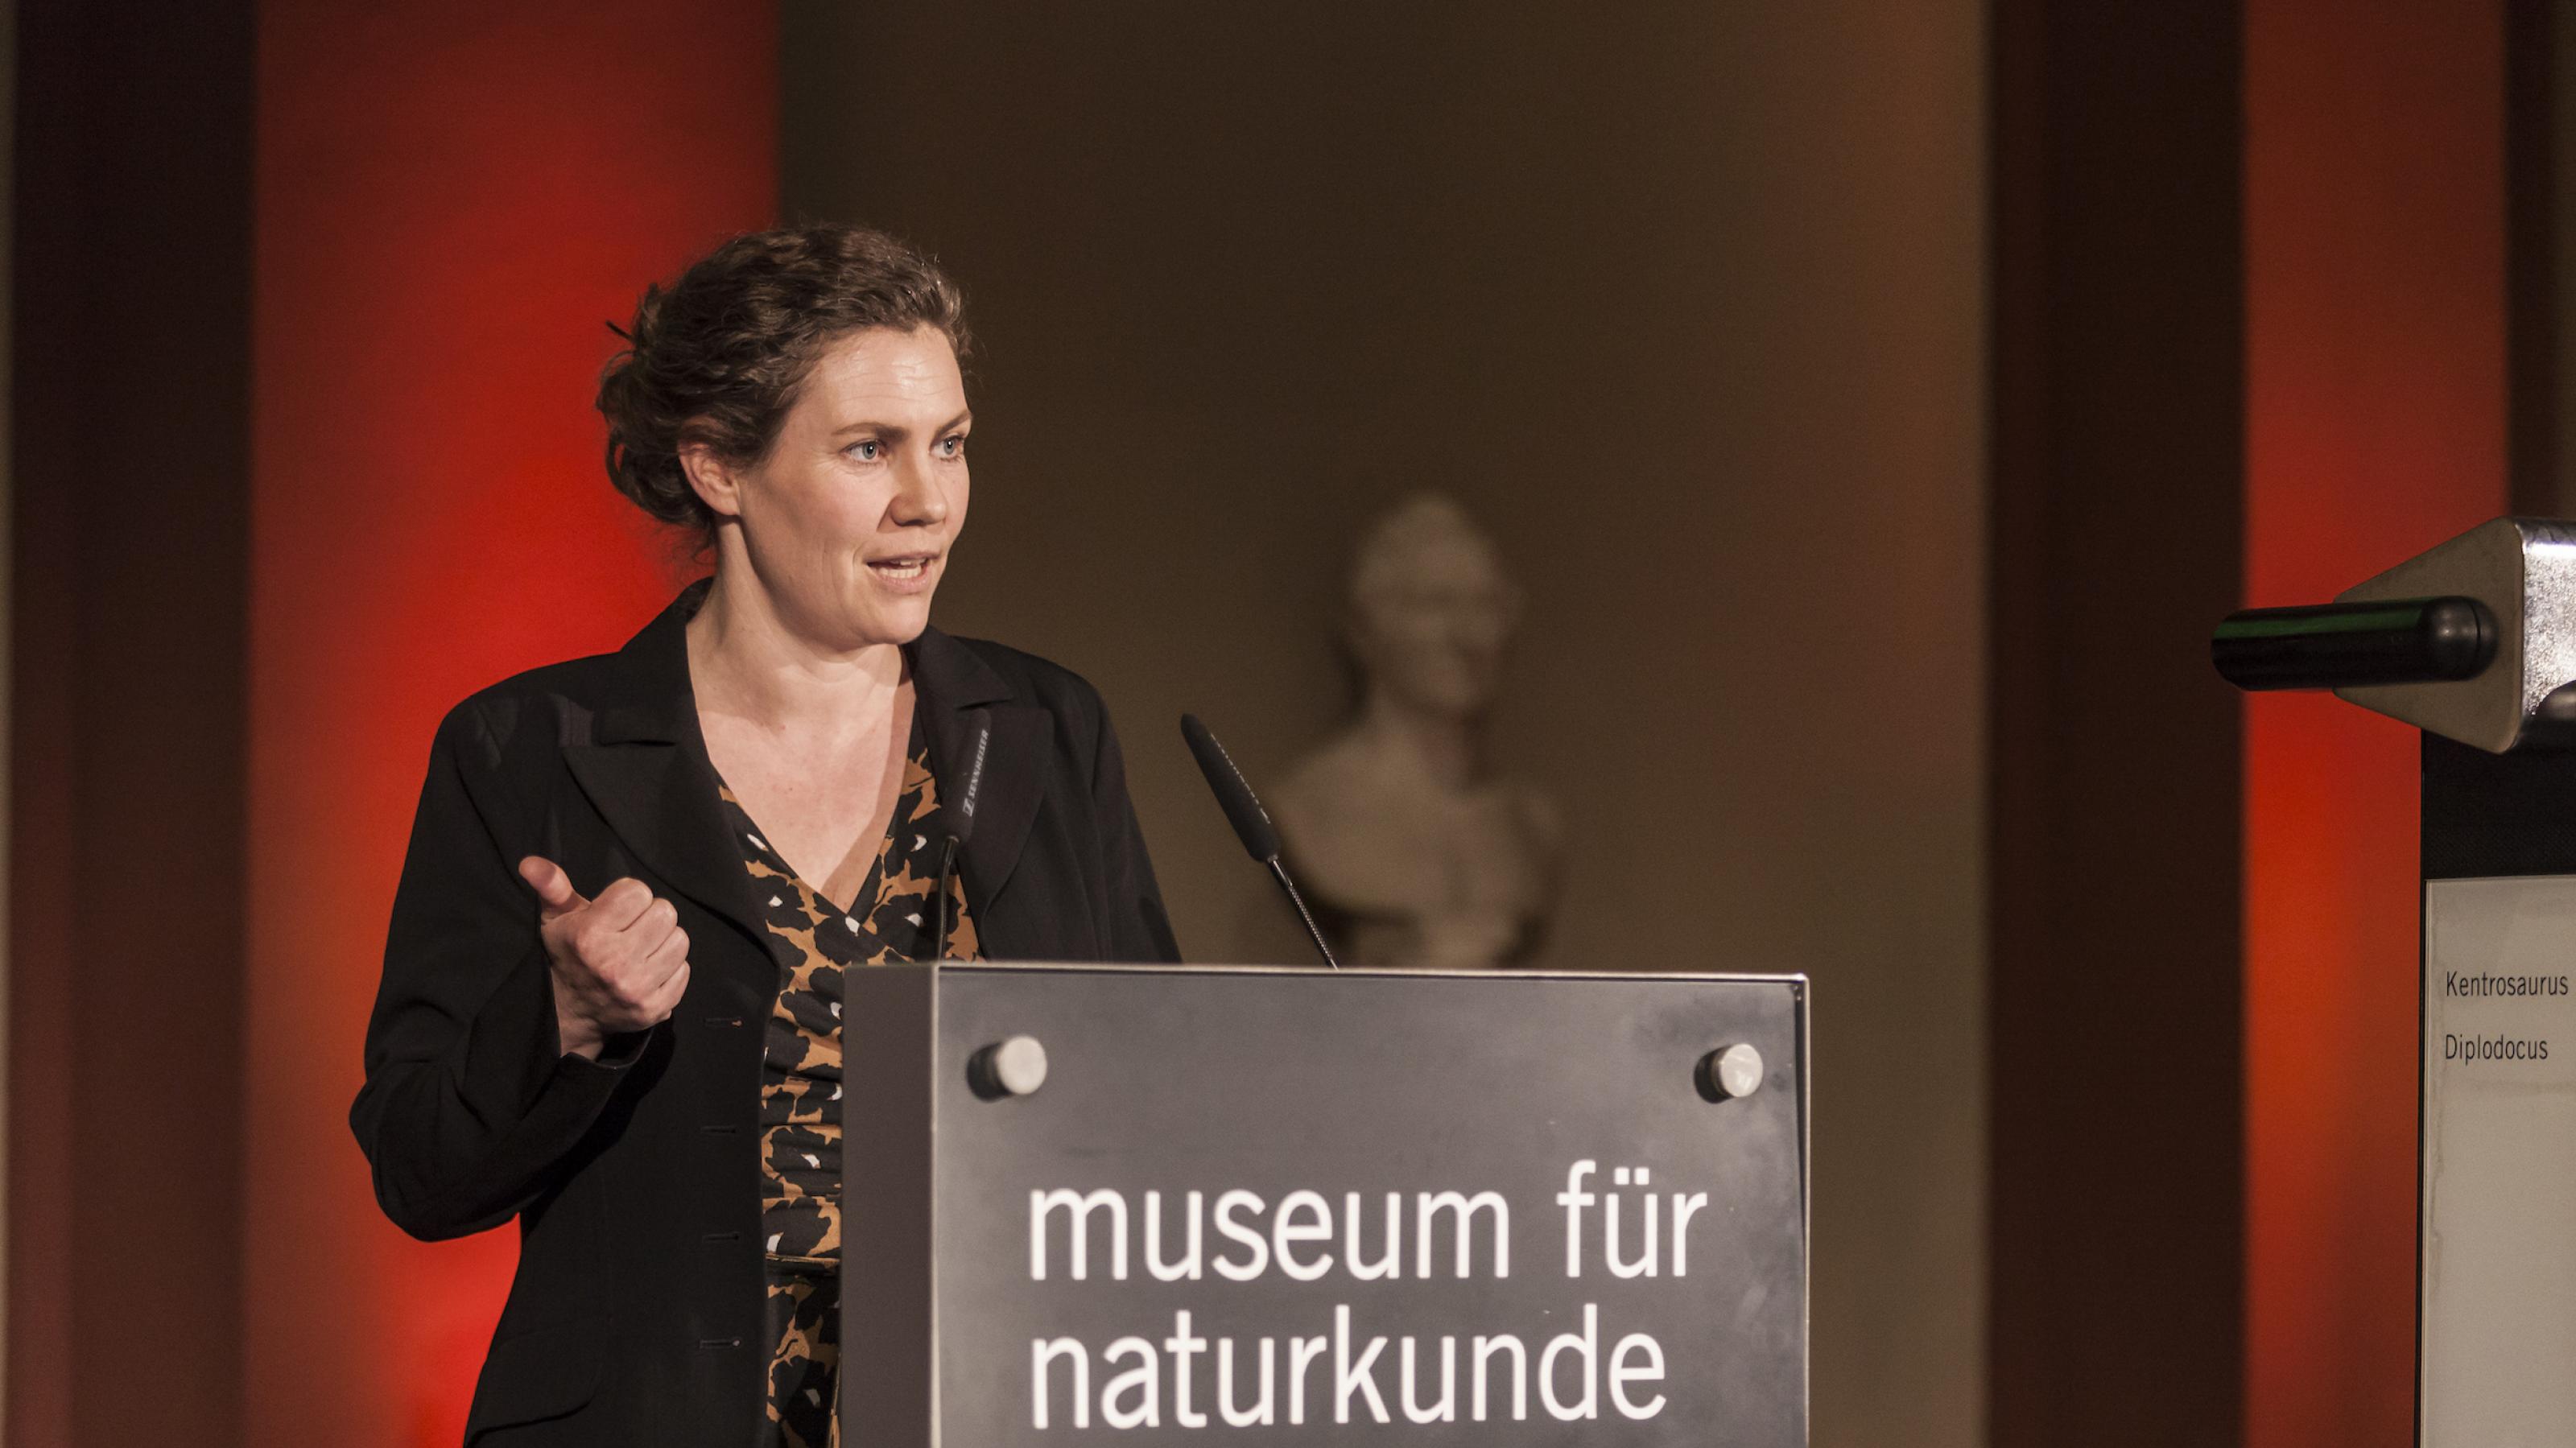 Eine Frau am Rednerpult, auf dem „Museum für Naturkunde“ steht.